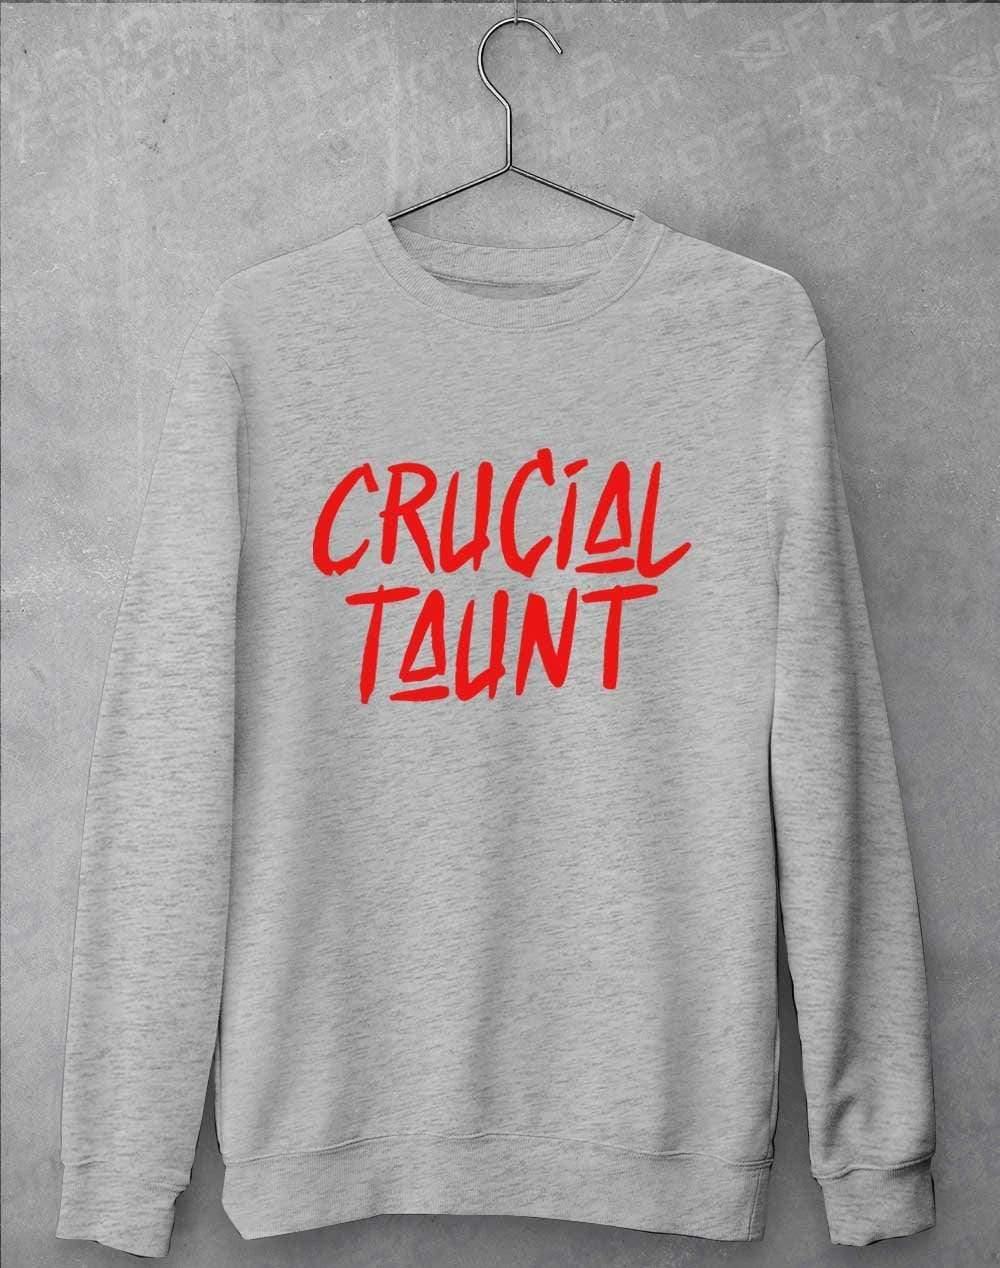 Crucial Taunt Sweatshirt S / Heather Grey  - Off World Tees